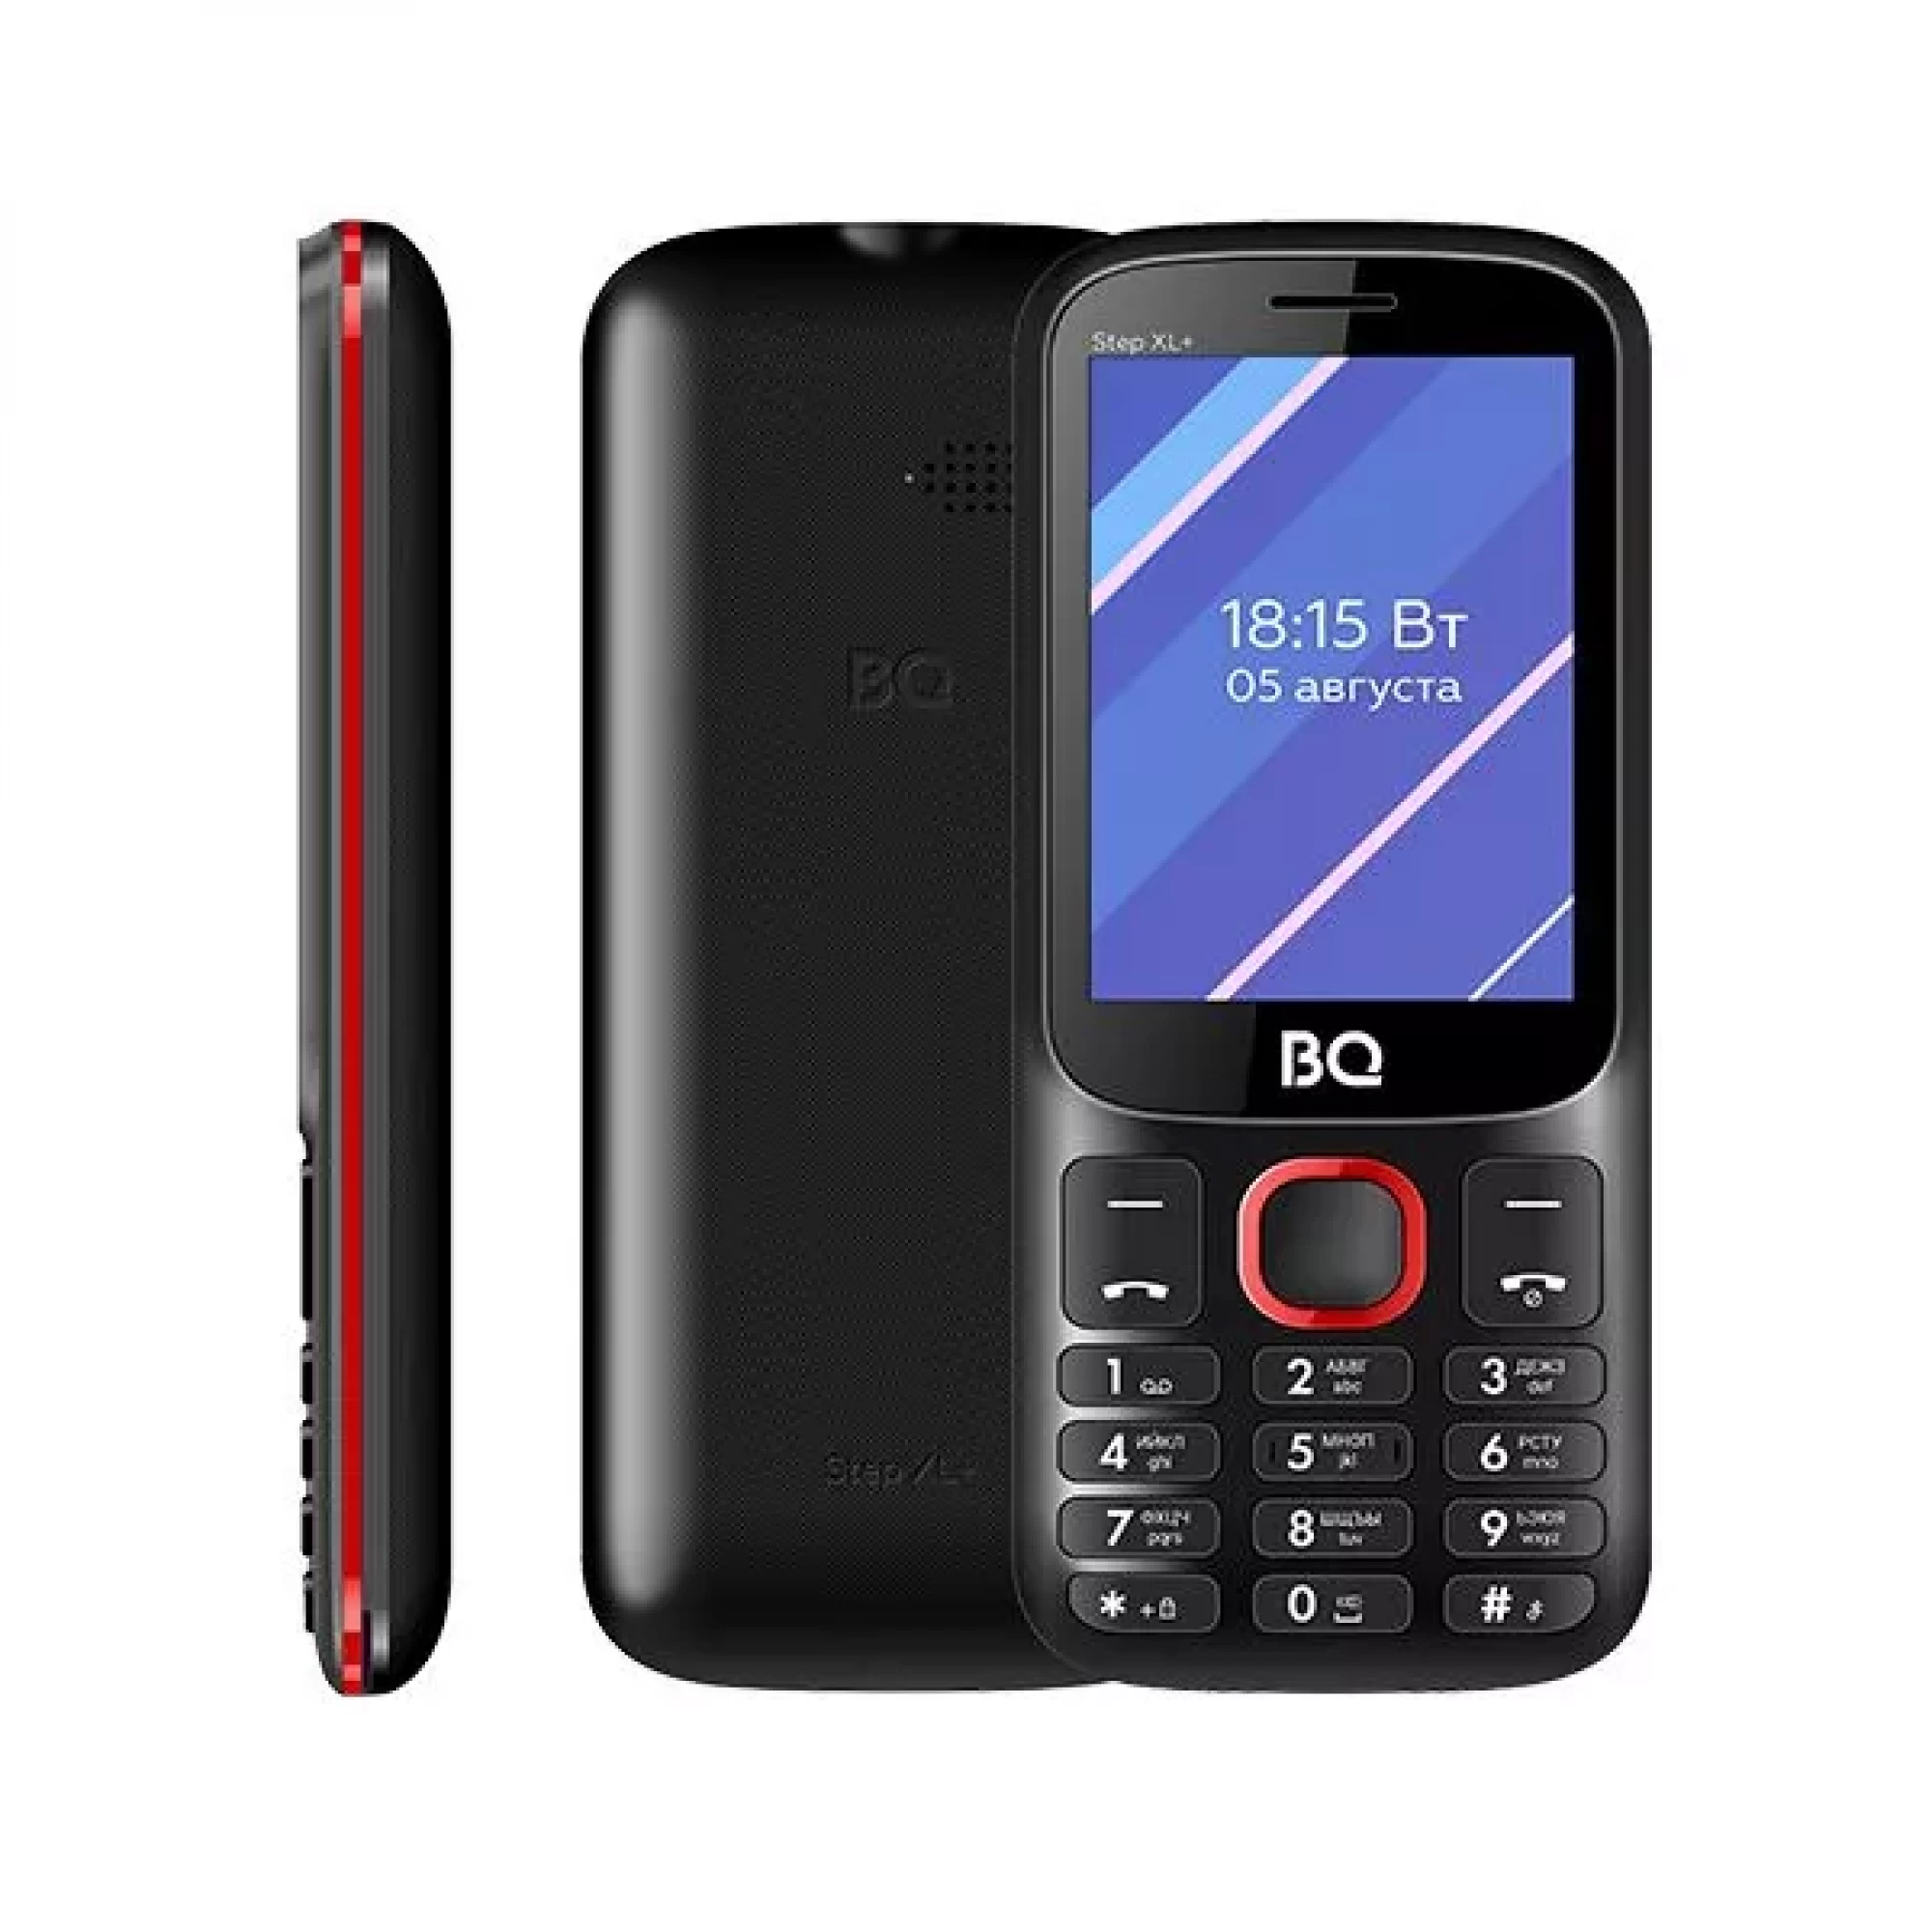 Мобильный телефон BQ BQ-2820 Step XL+ (черный/красный)